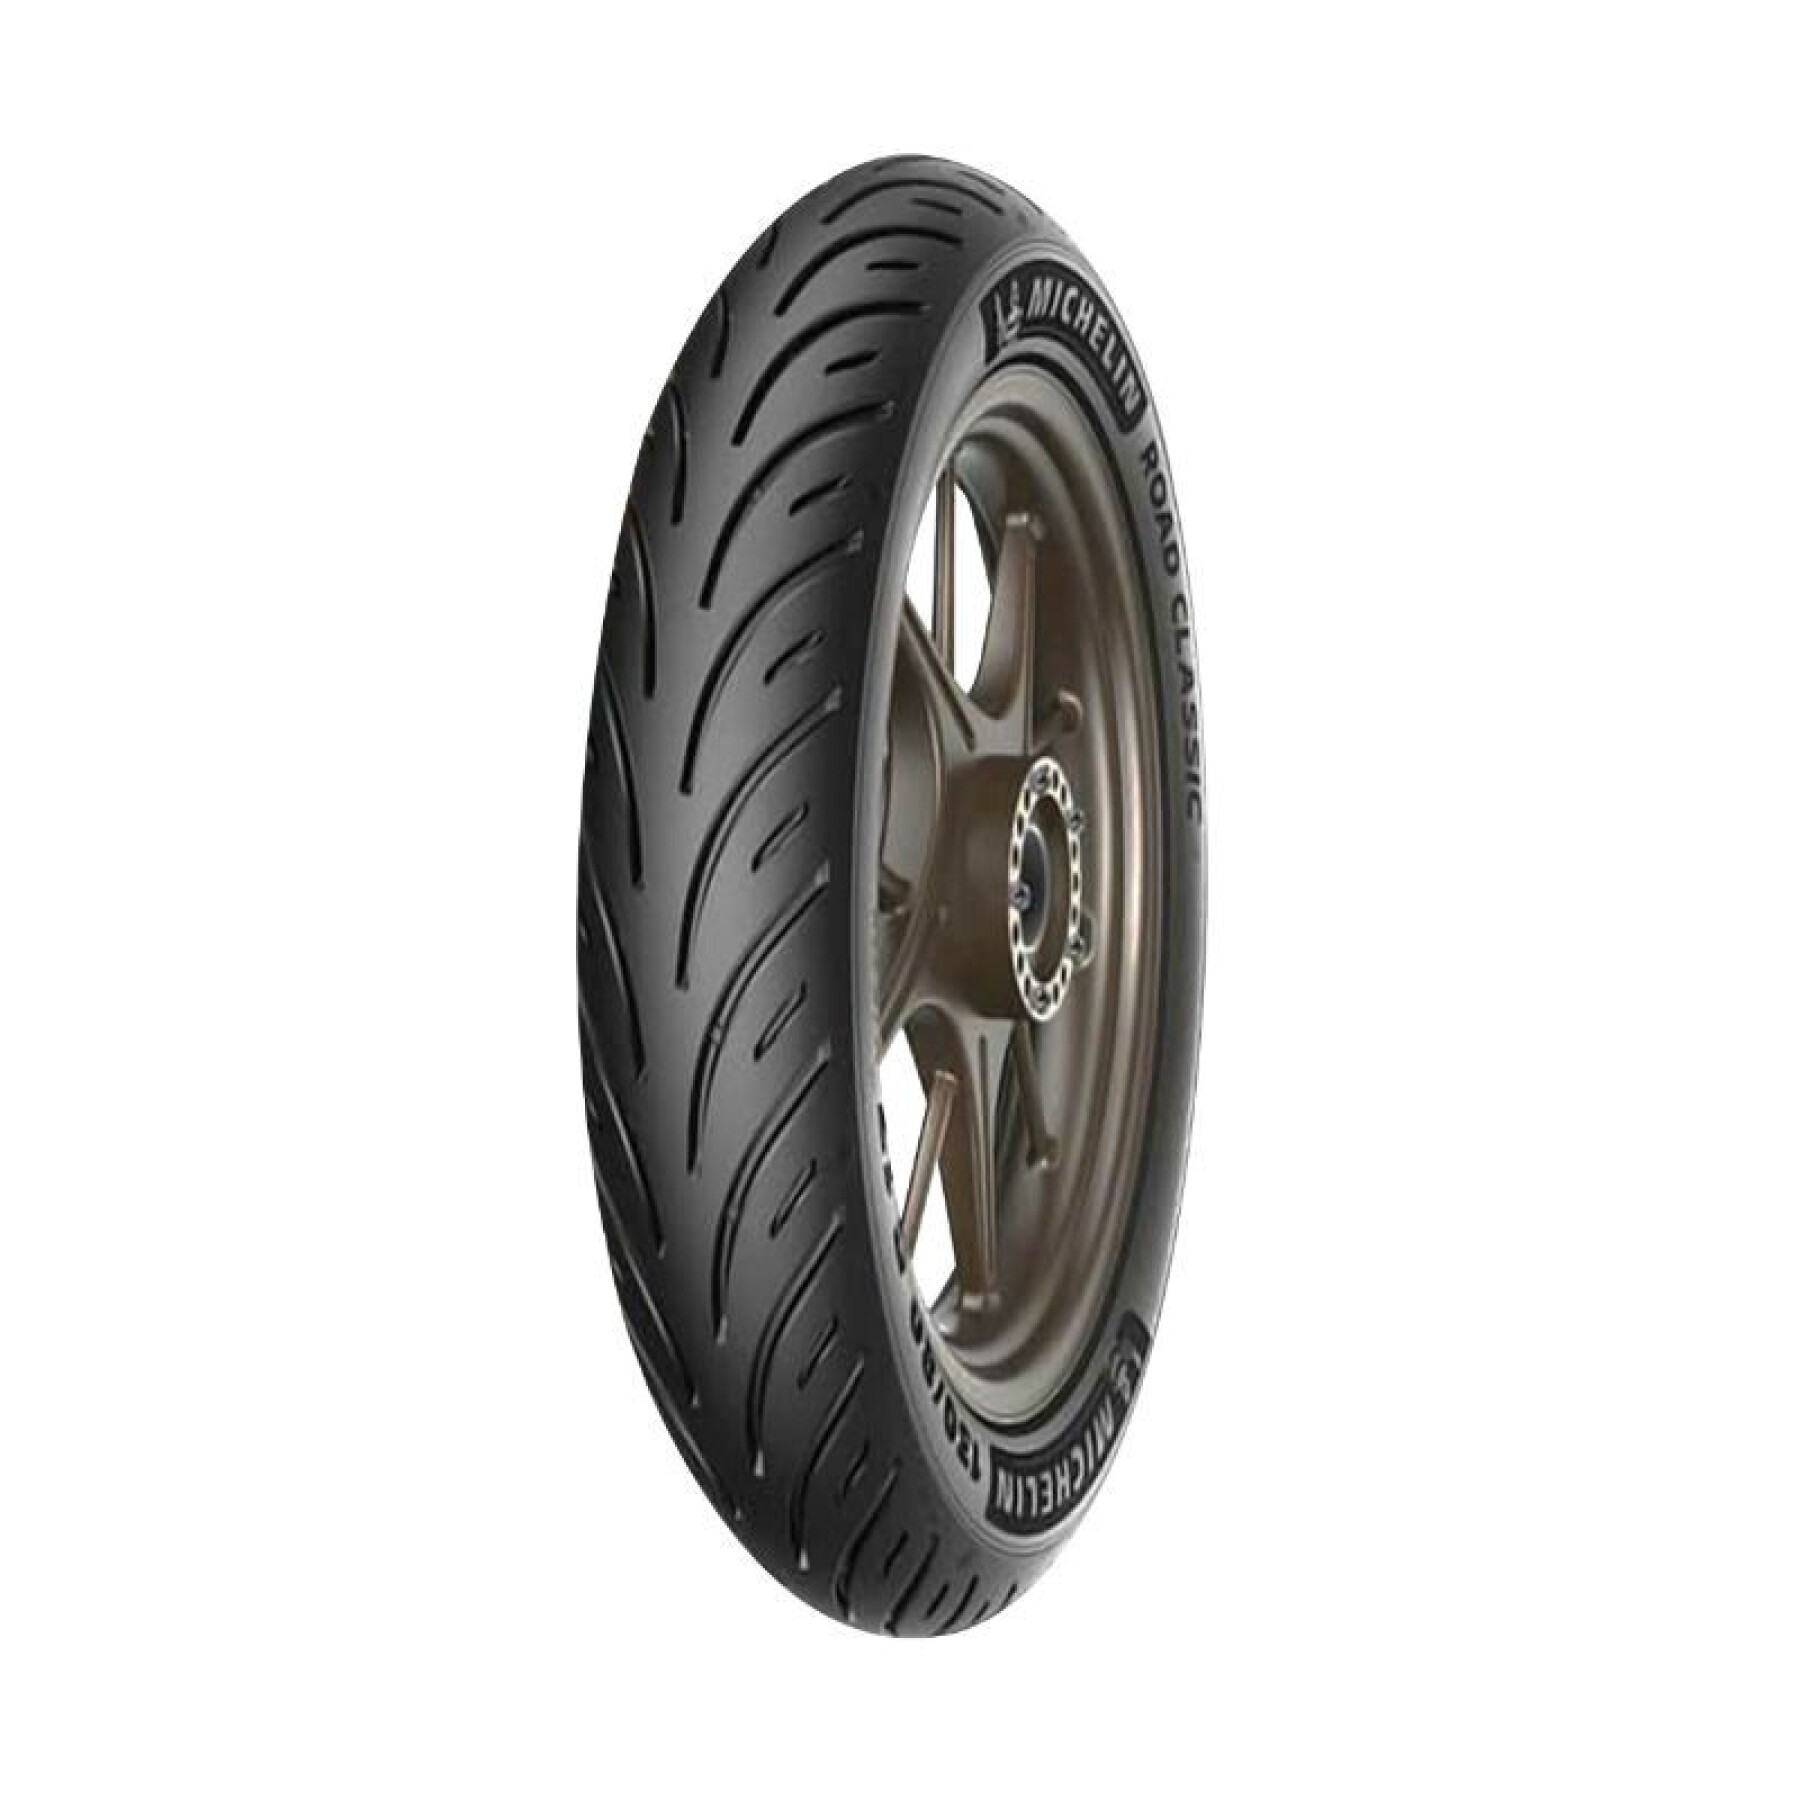 Neumático delantero Michelin Road Classic TL 54H 110-70-17